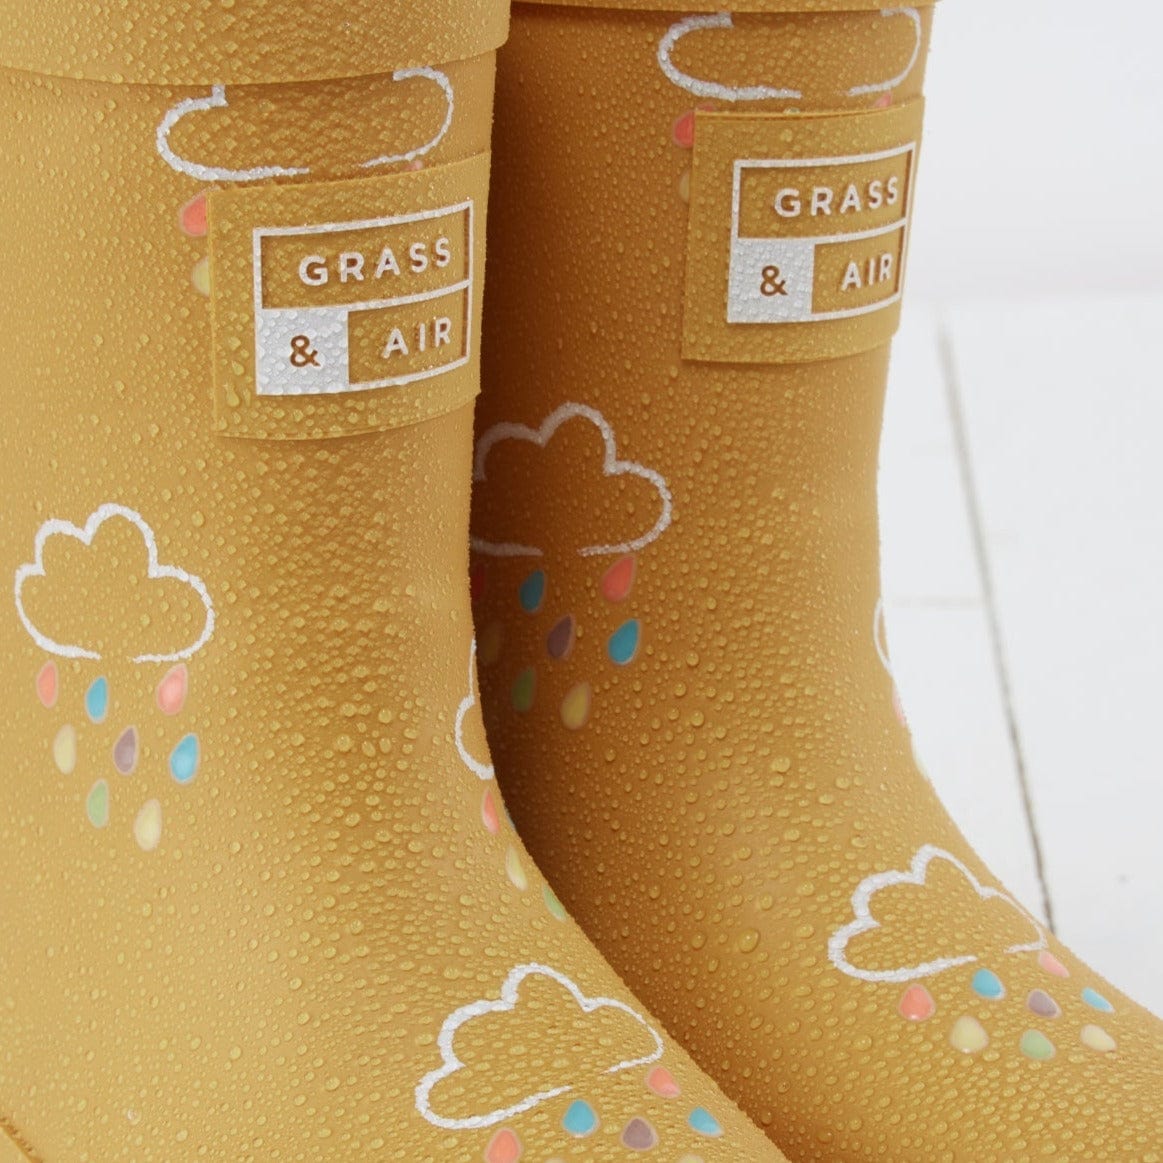 Grass & Air Wellie Boots Grass & Air Kids Colour Changing Wellies (Ochre)